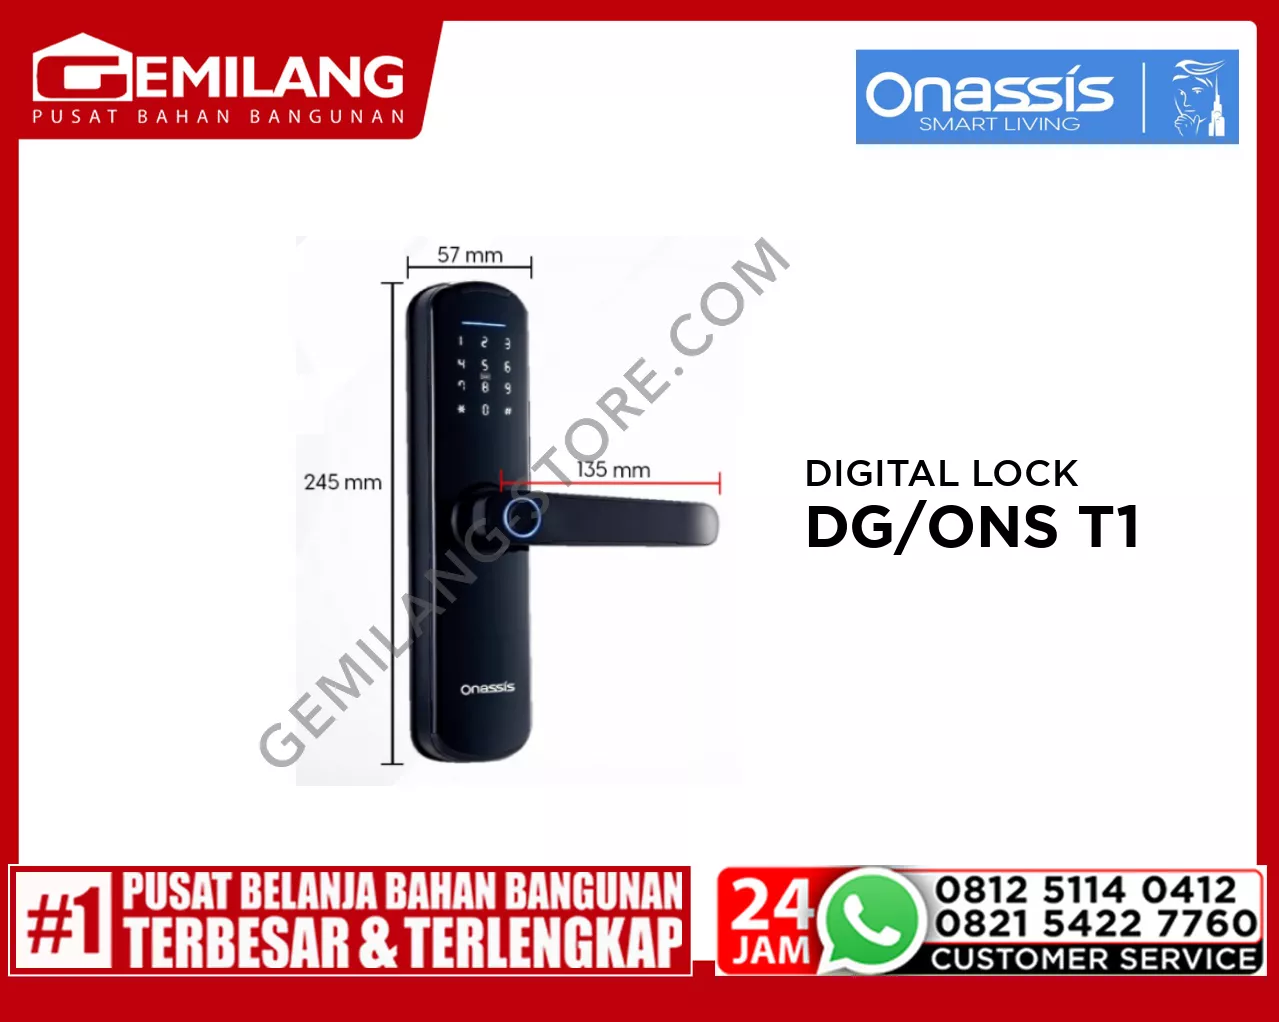 ONASSIS DIGITAL LOCK FOR WOODEN DOOR - DG/ONS T1 PRO